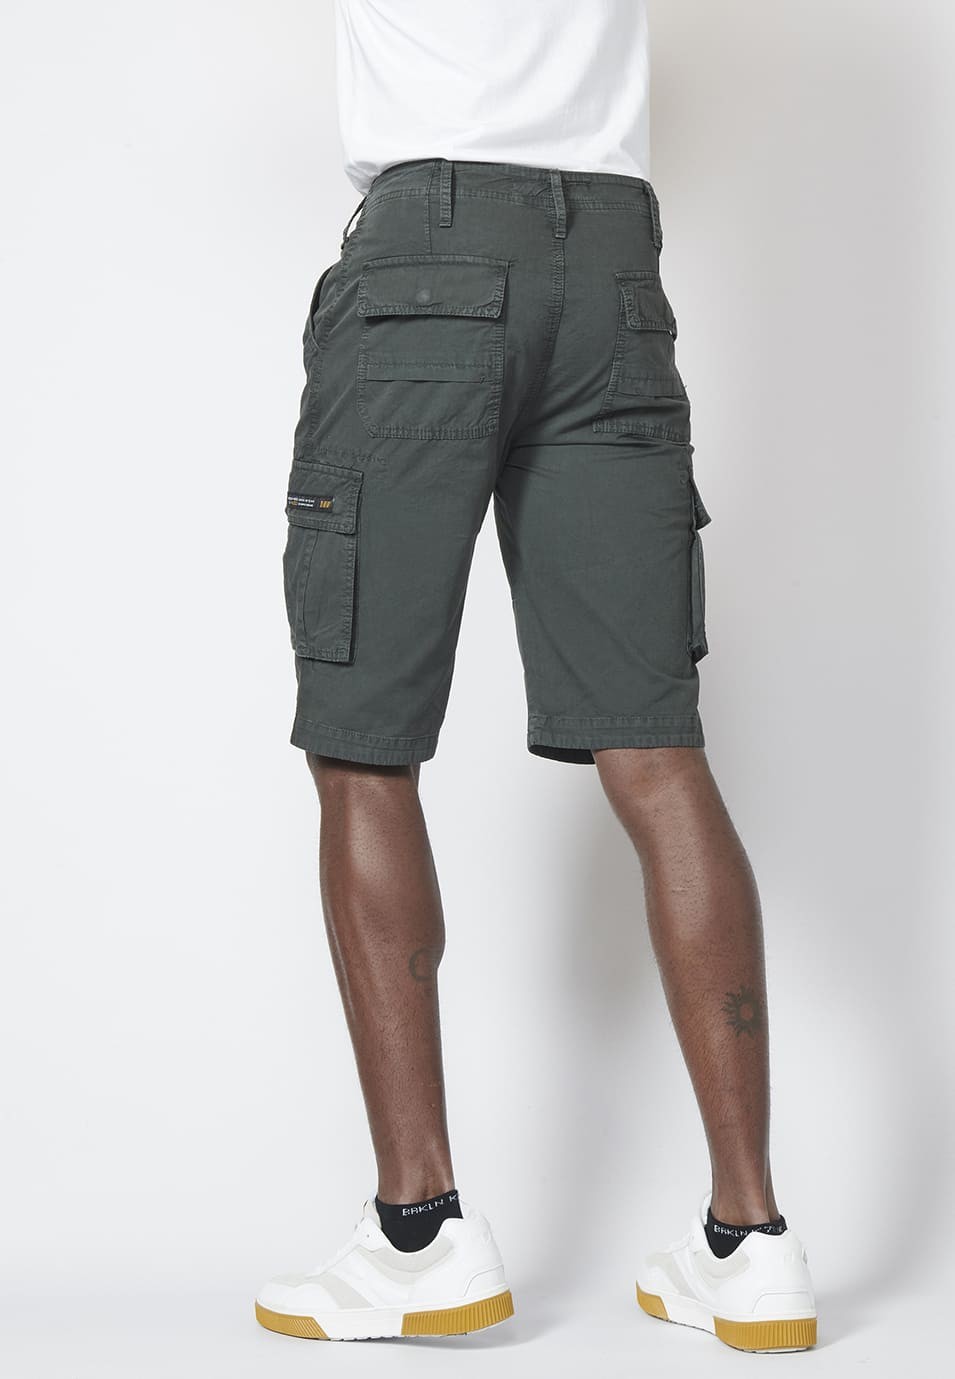 Bermuda pantalón corto estilo cargo para hombre con seis bolsillos color Negro 1